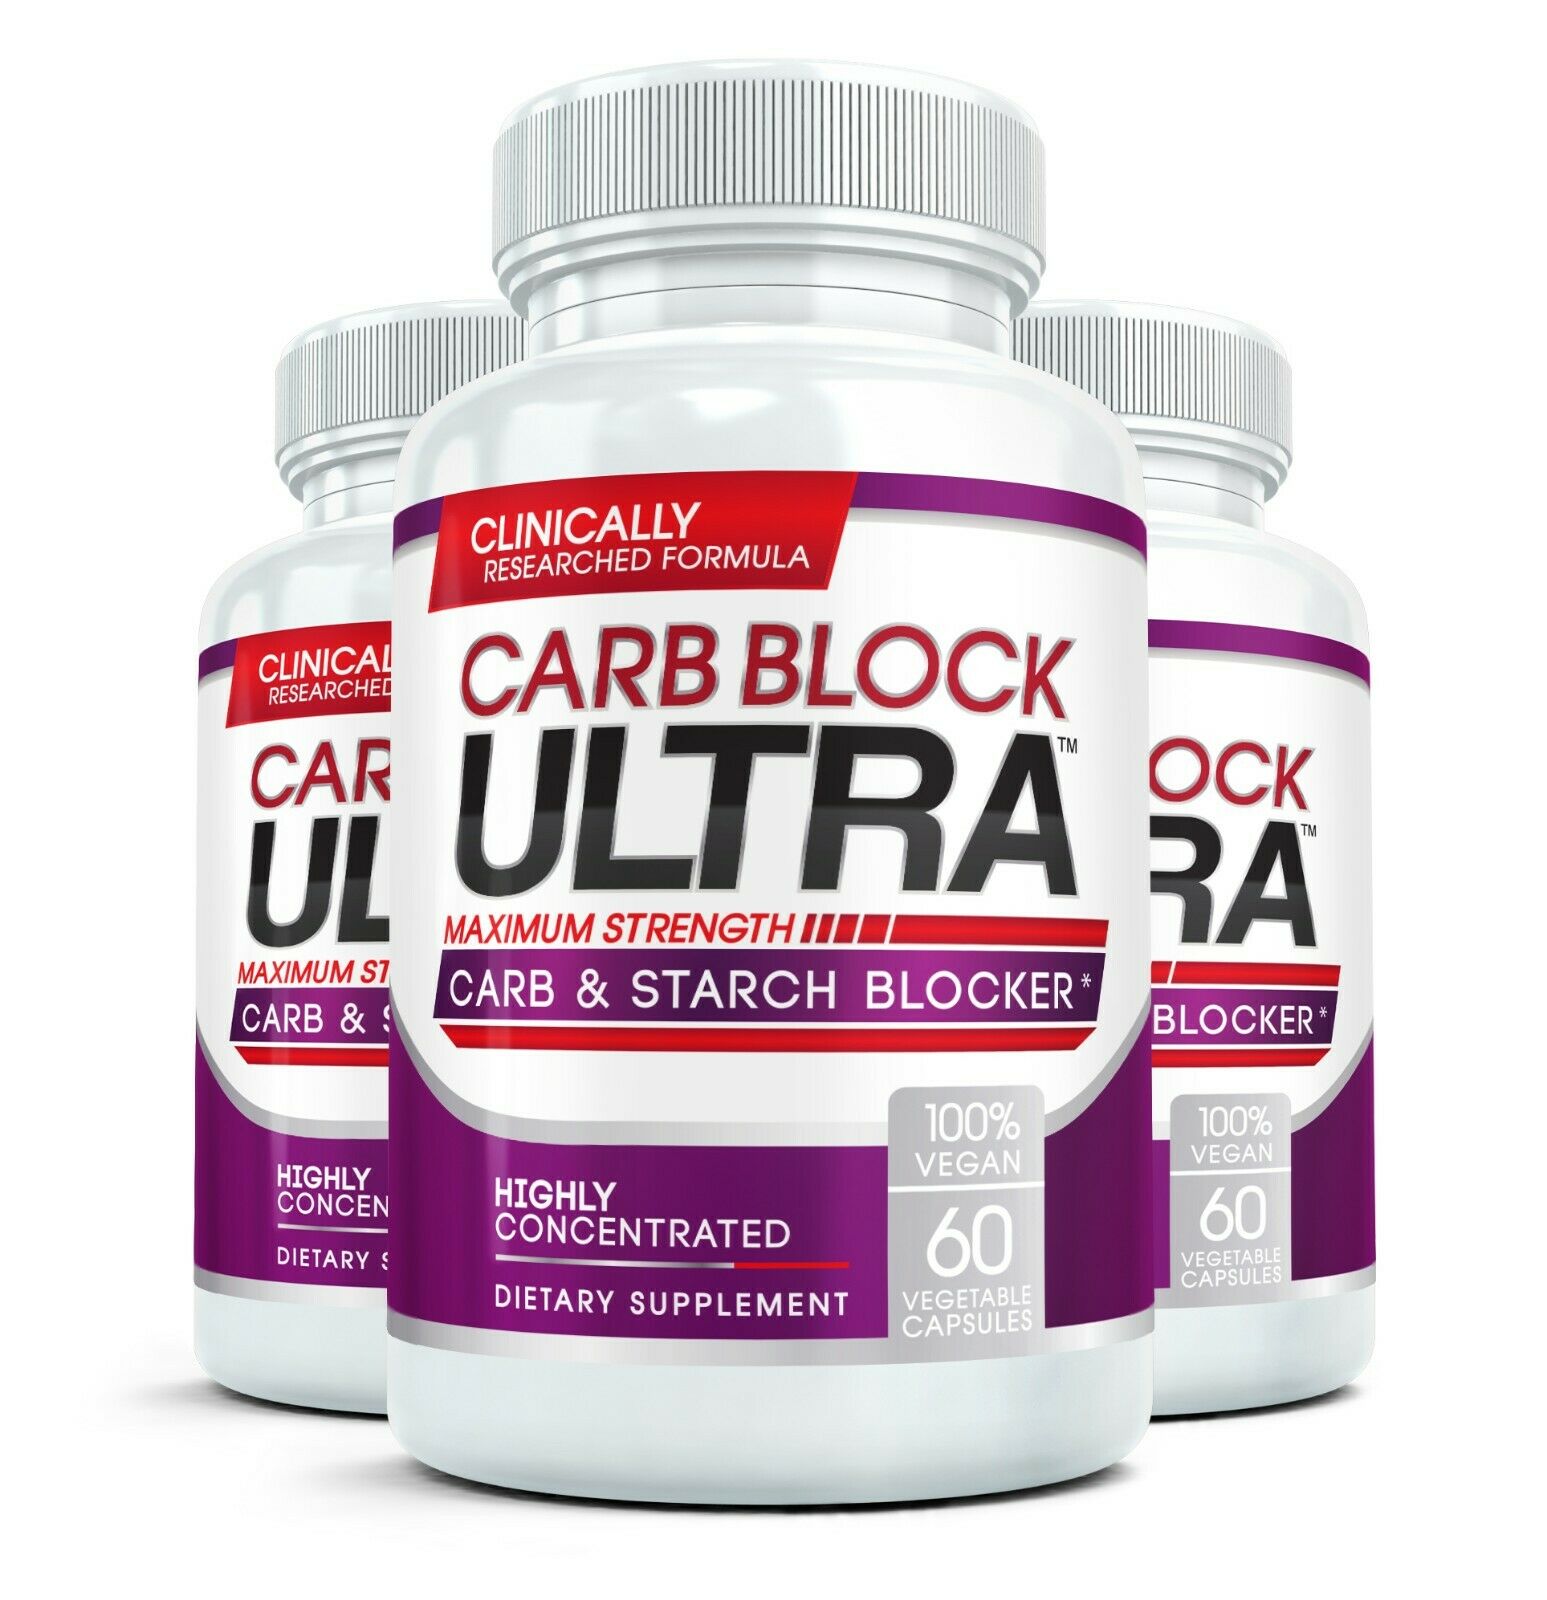 Carb Blocker Ultra Diet Pill Intercept Starch (3 Bottles)